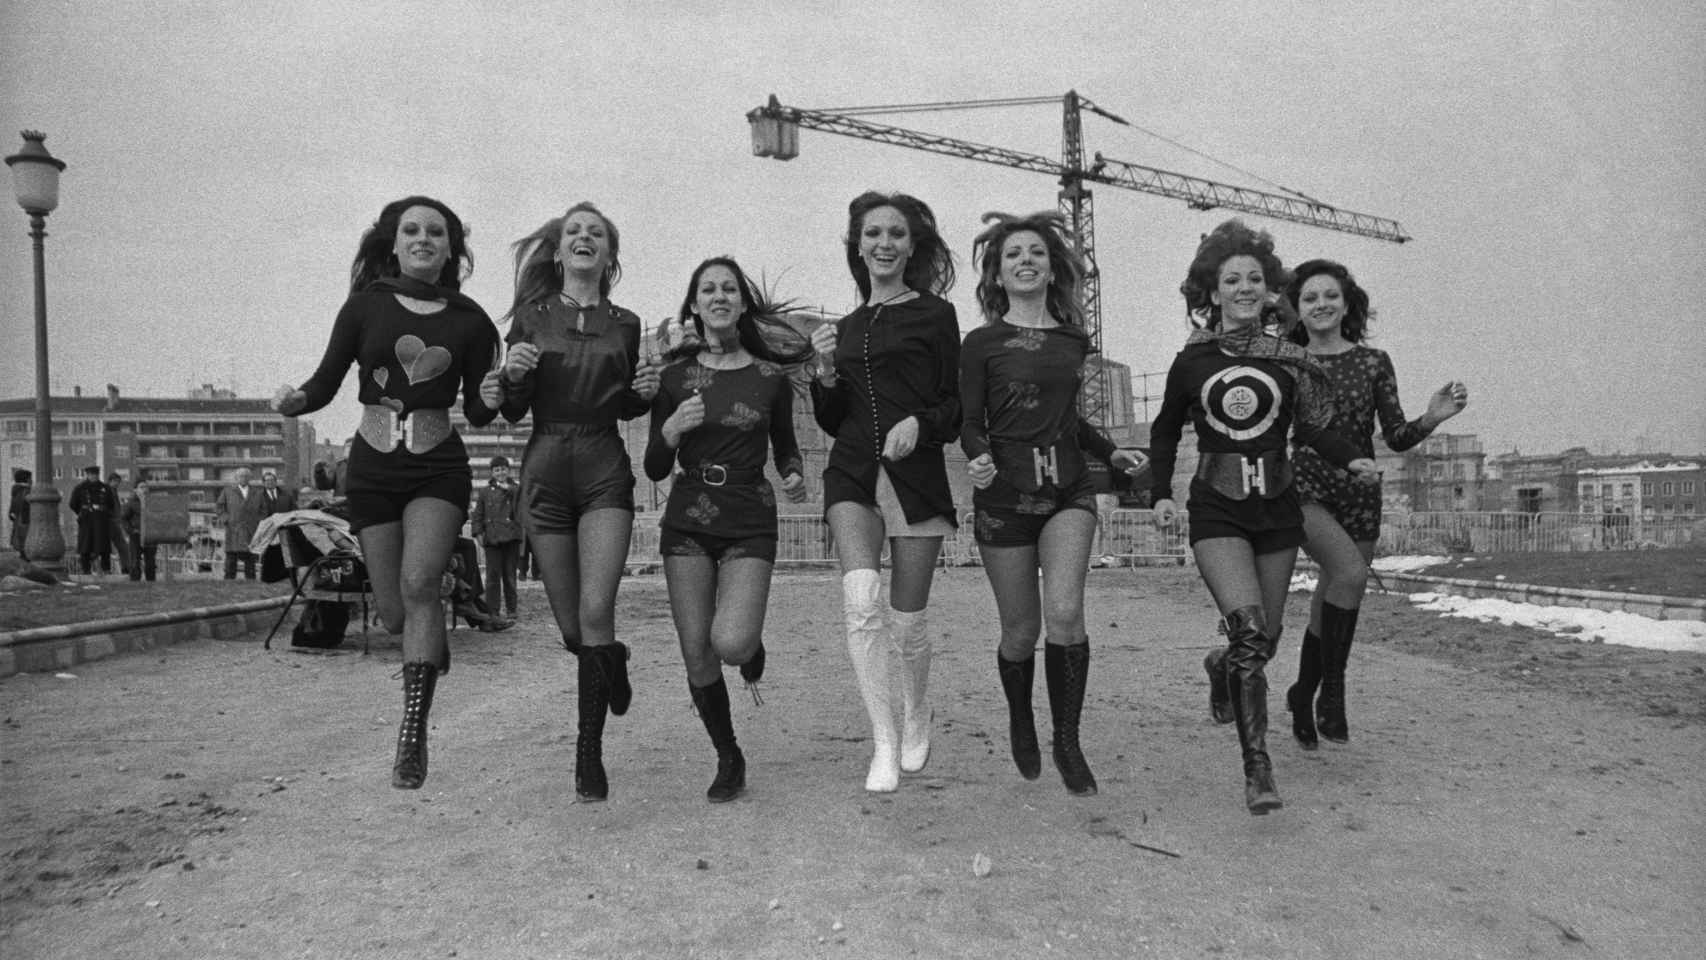 Modelos con los shorts de moda. Editorial realizado a las afueras de Madrid. 1971. © Joana Biarnés/ Photographic Social Vision